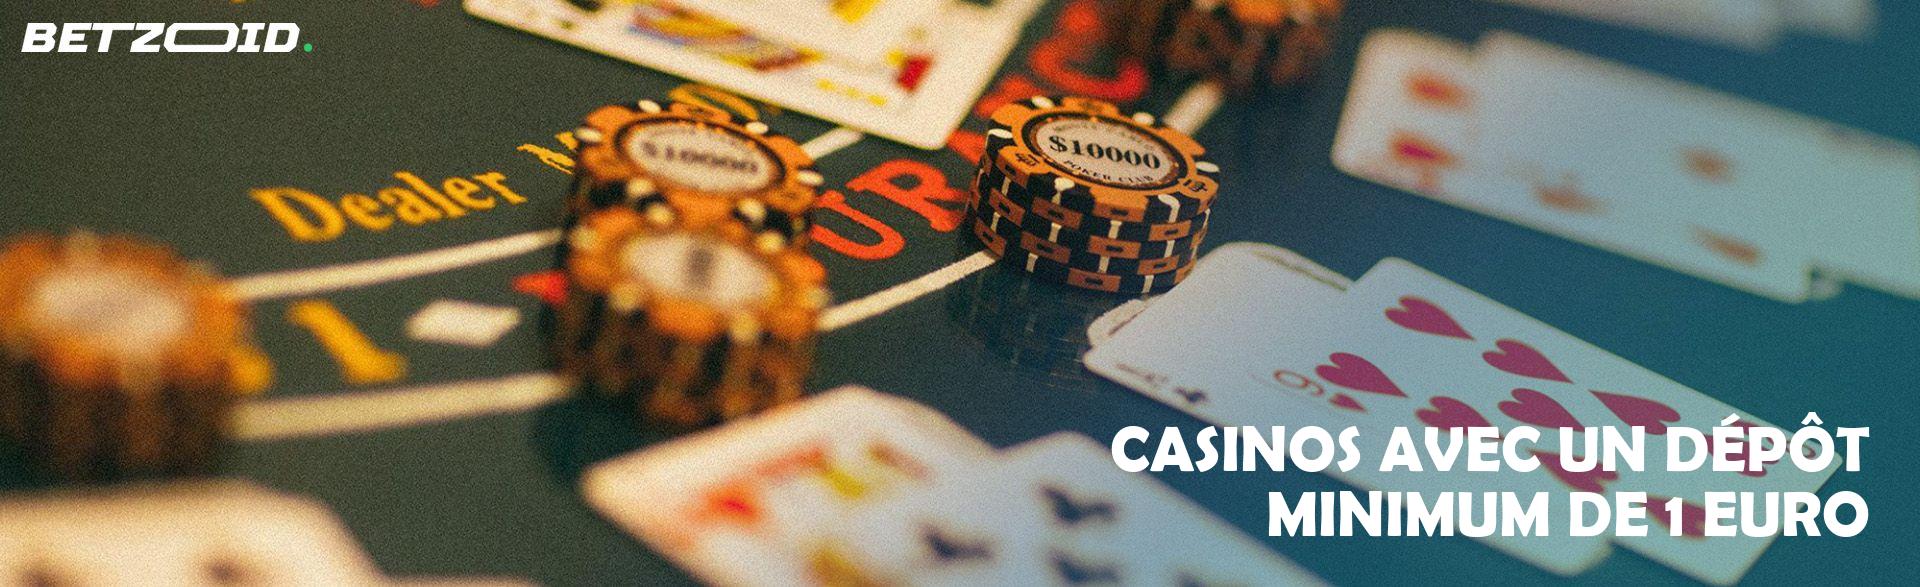 Casinos avec un Dépôt Minimum de 1 Euro.